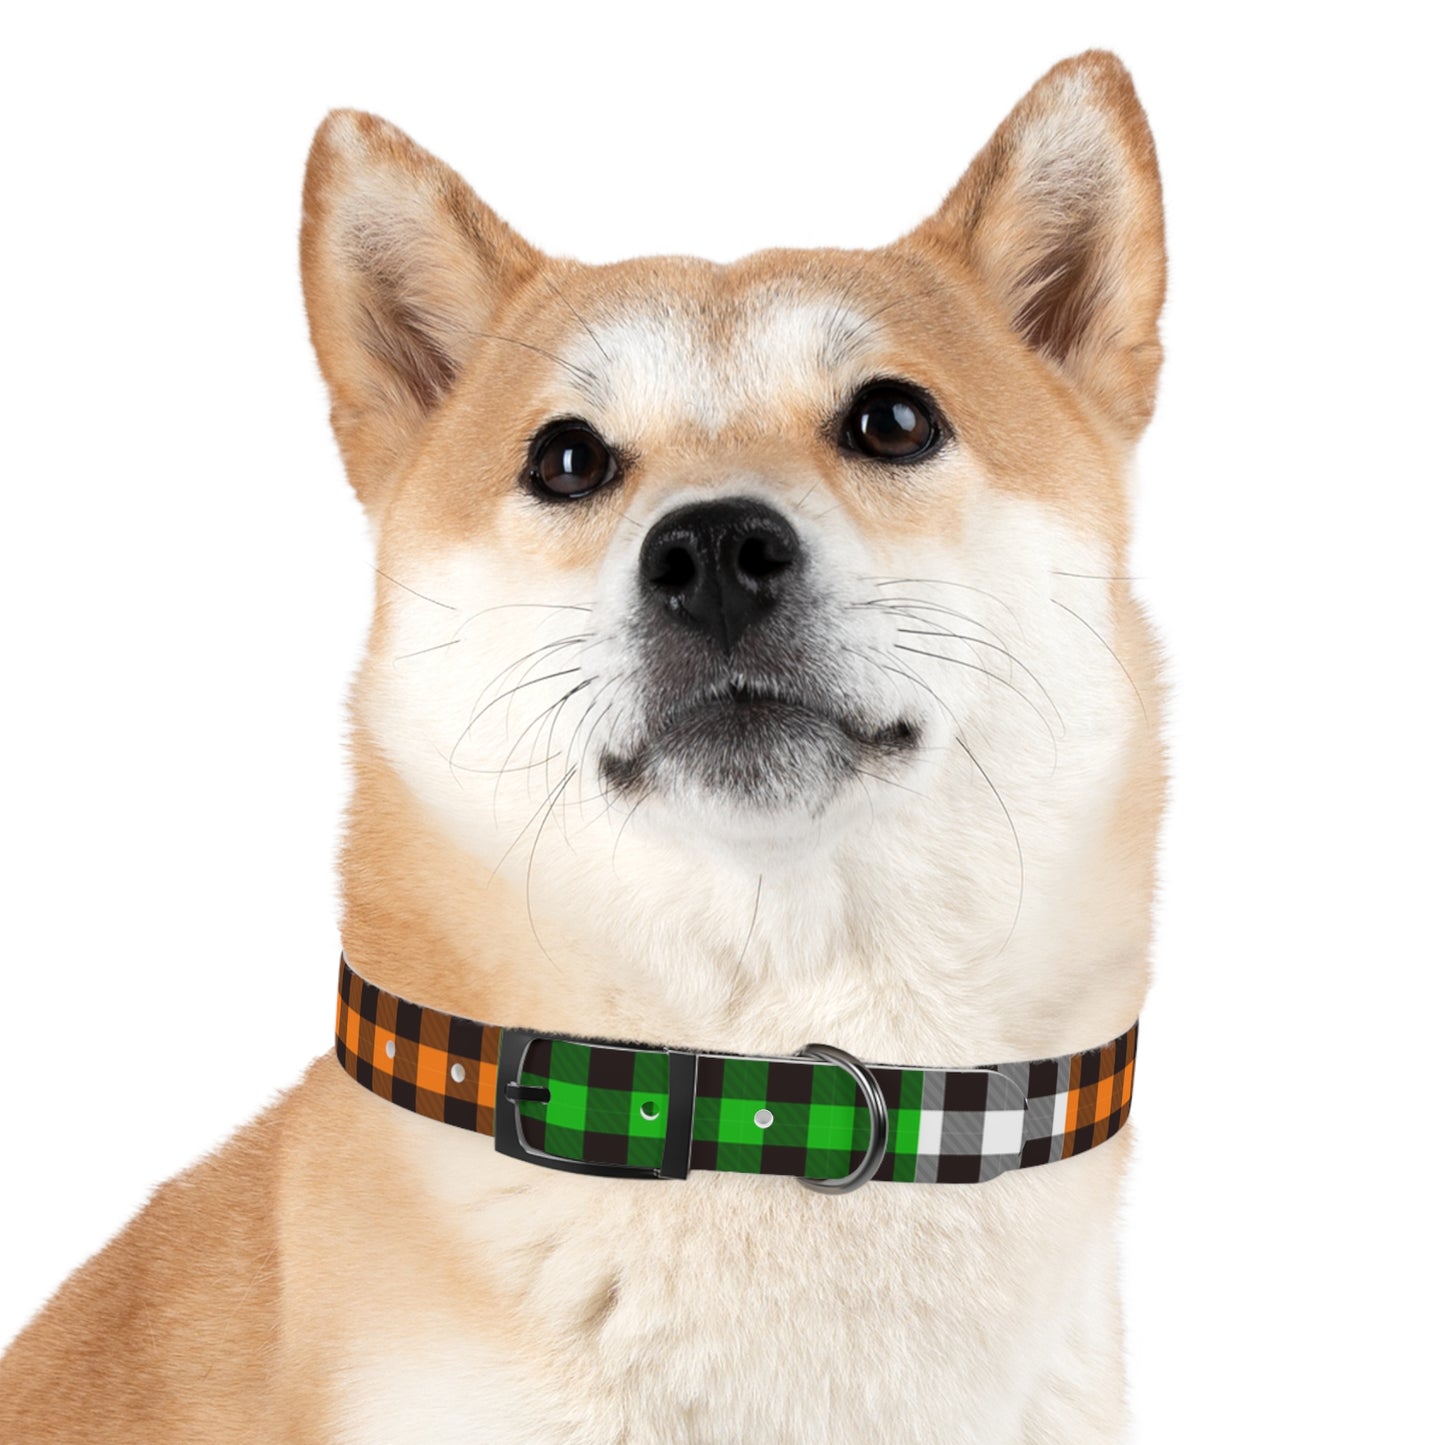 Irish Flannel Dog Collar